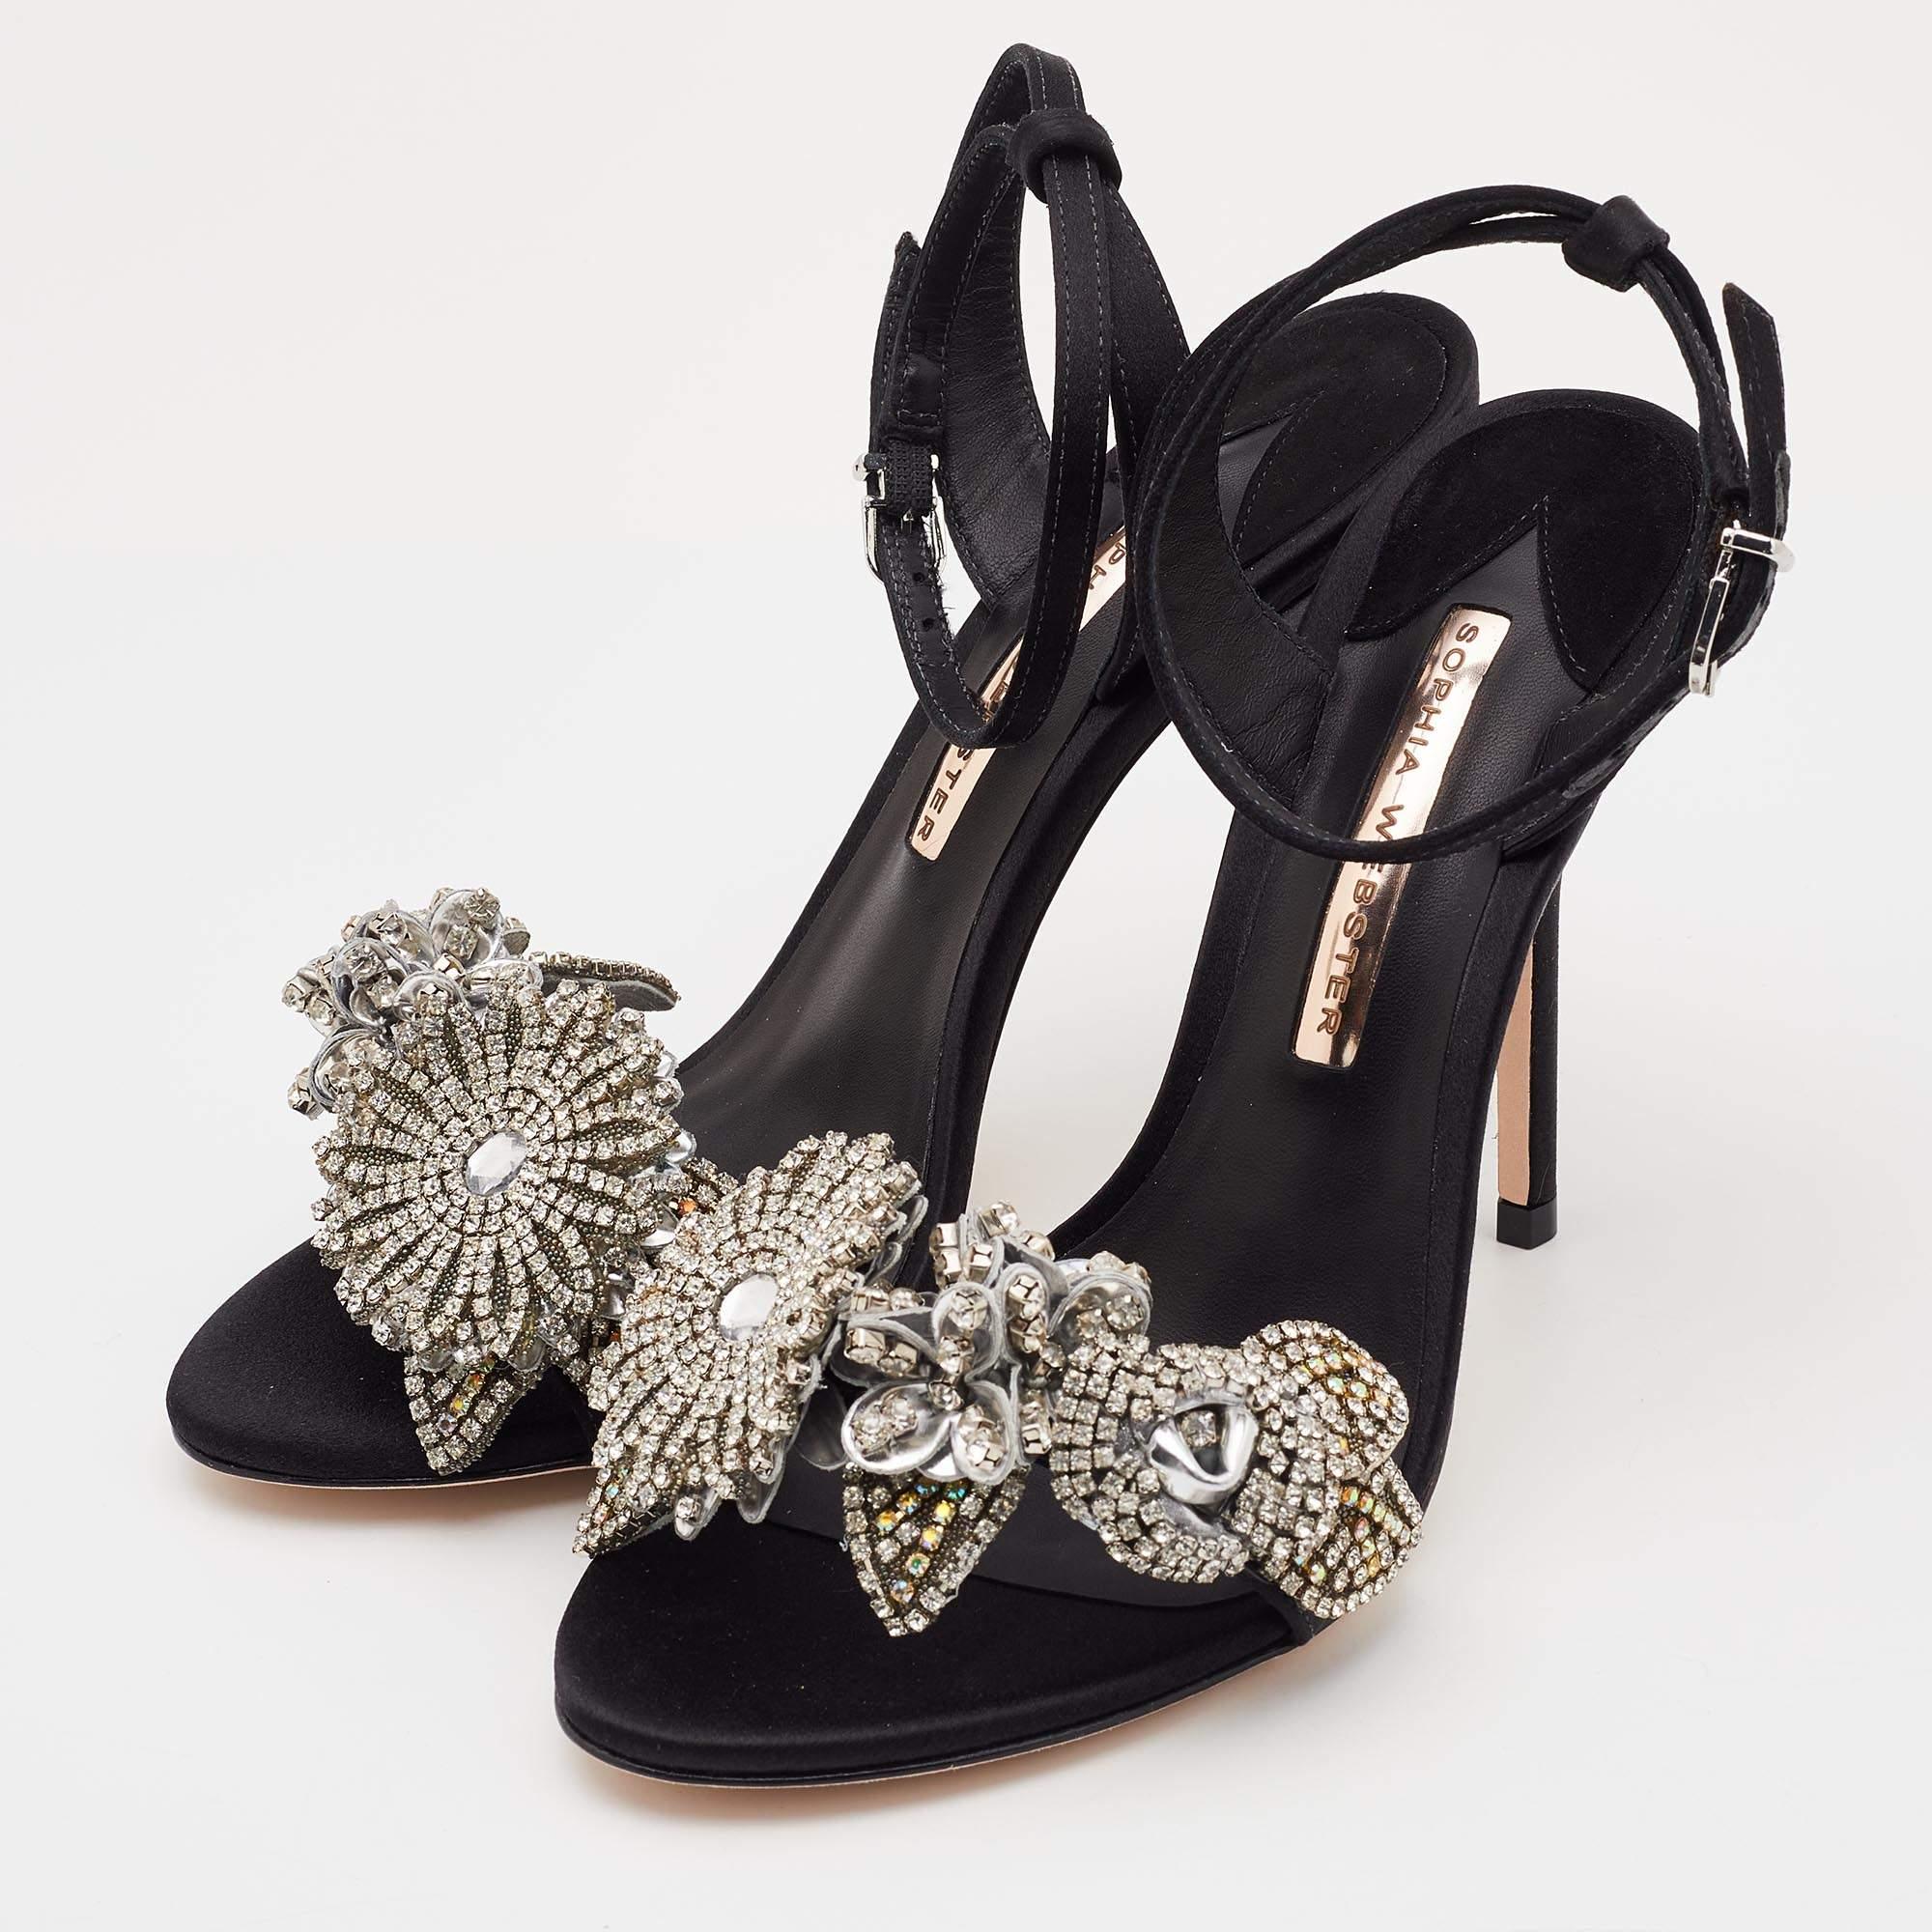 Women's Sophia Webster Black Satin Lilico Floral Embellished Ankle Wrap Sandals Size 38